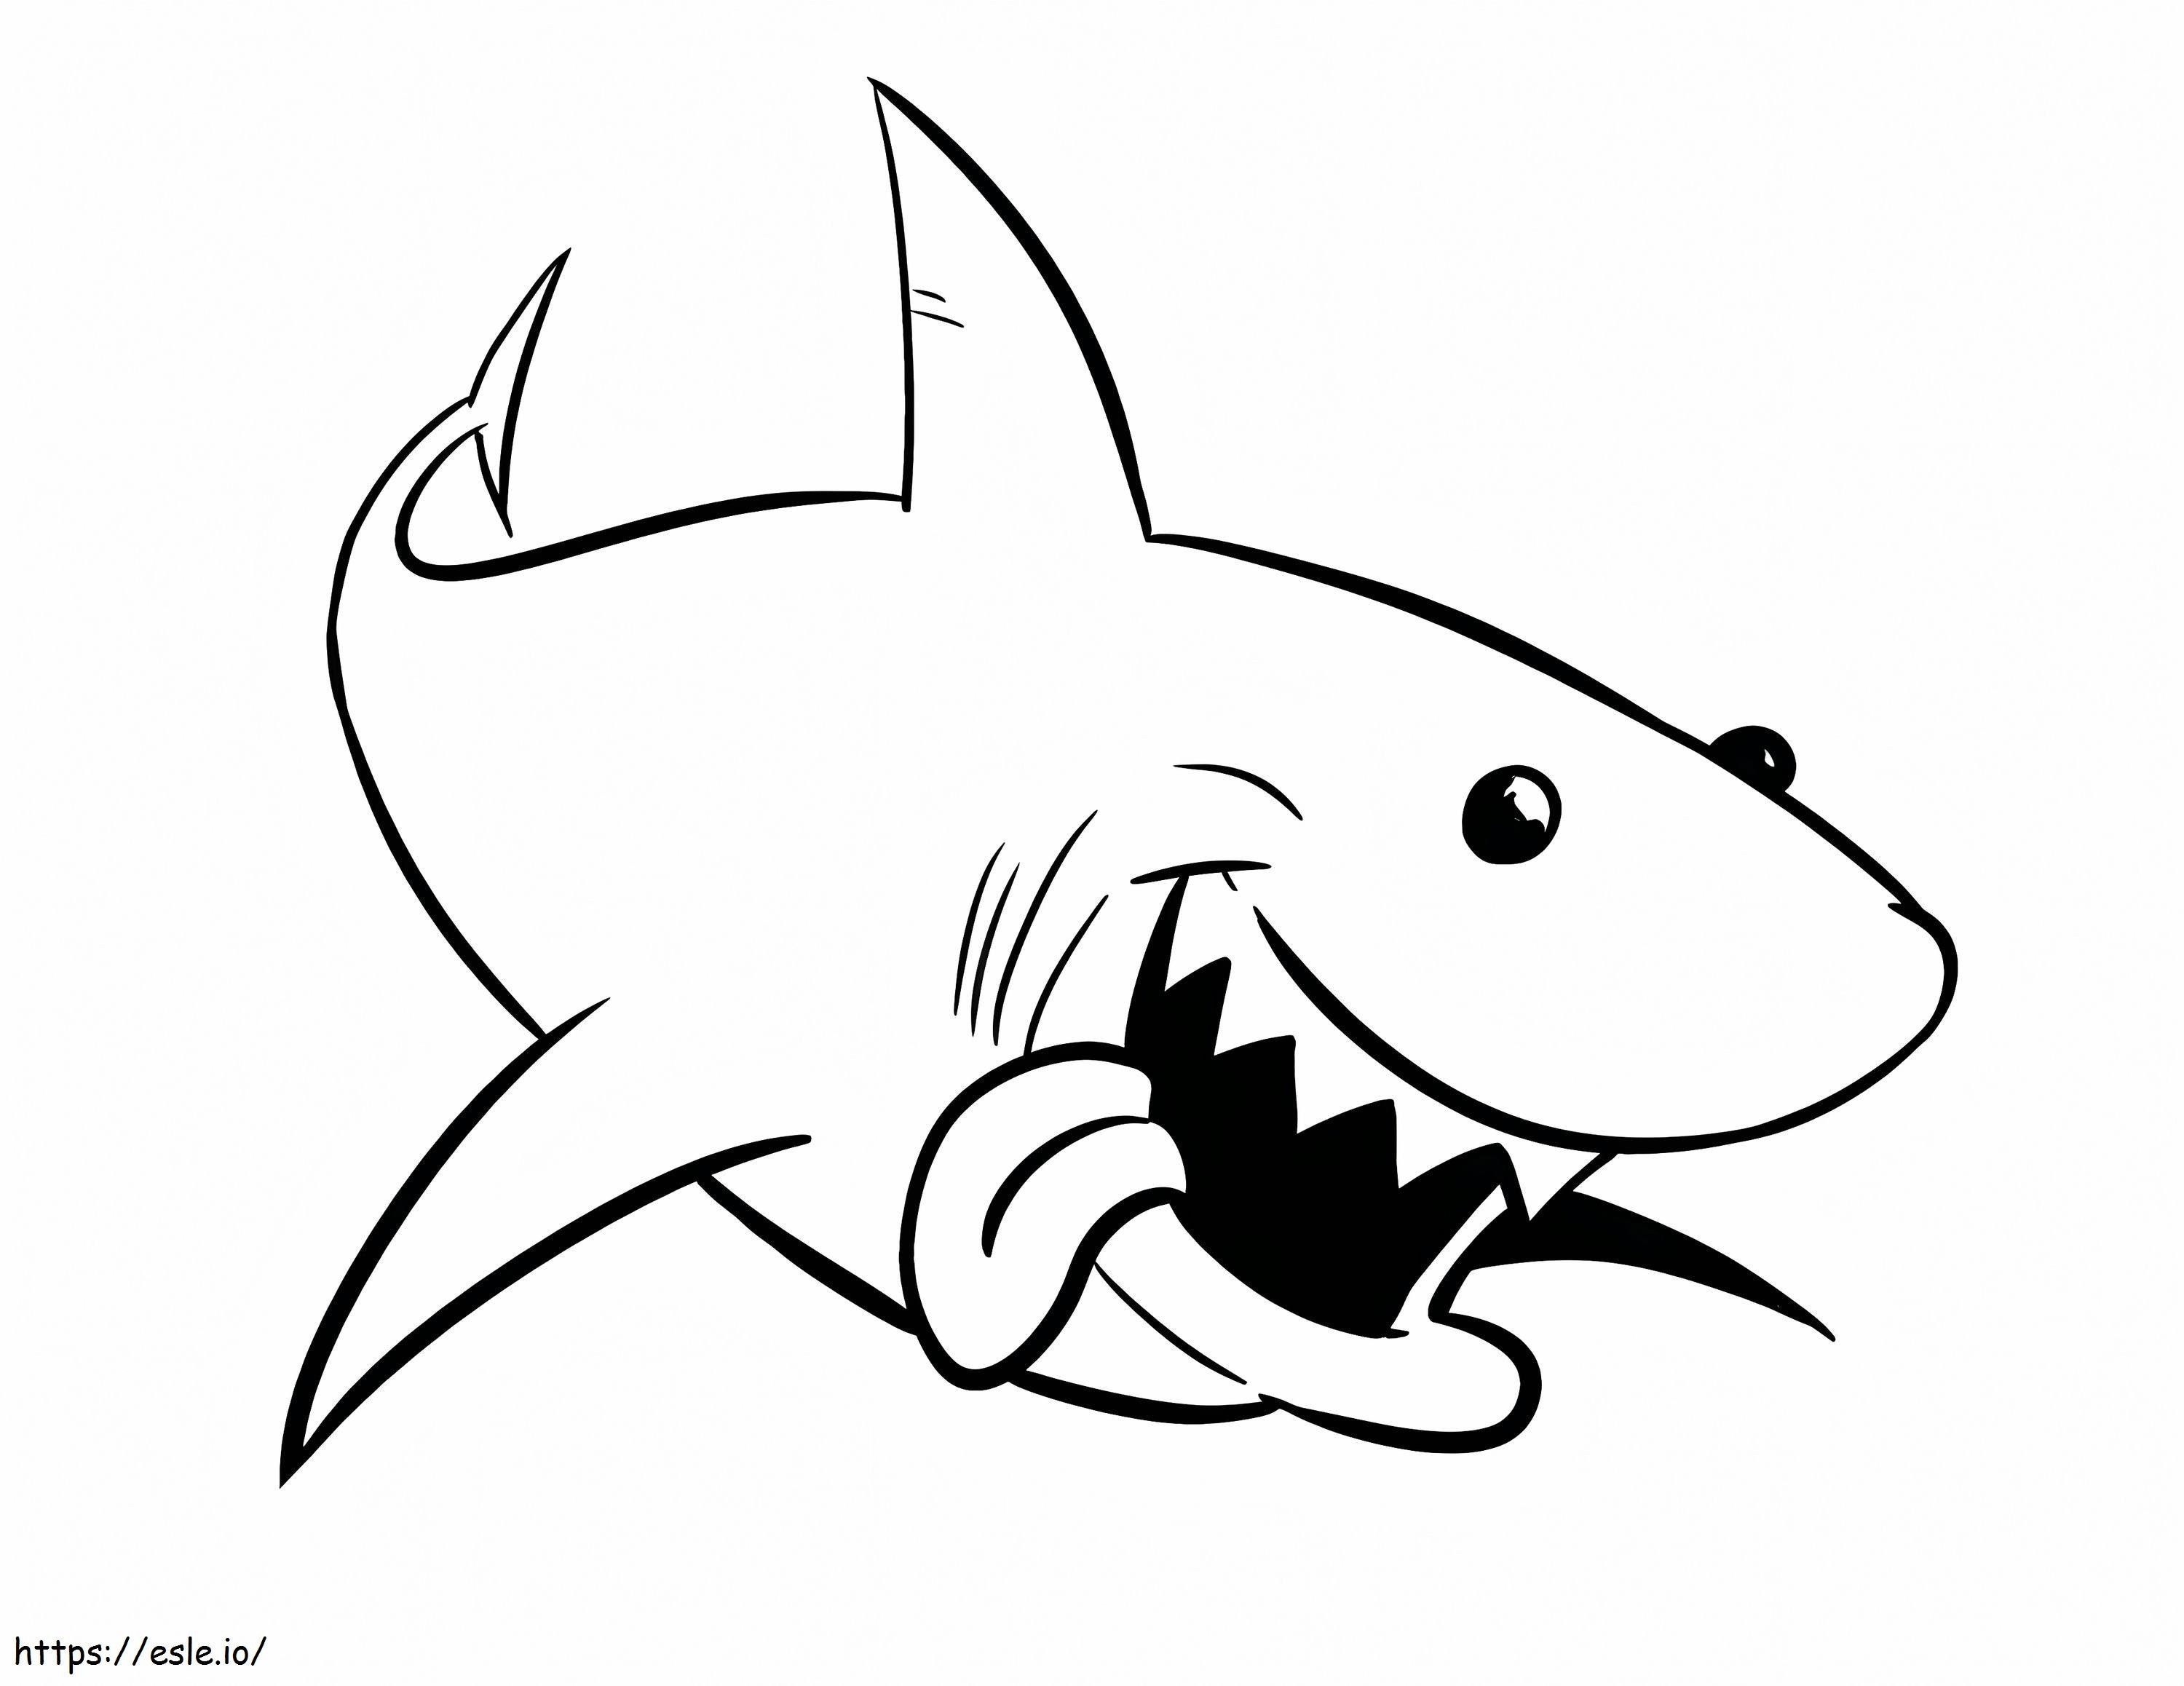 1541378982 Komplett D792570 Bikacápa Nagy fehér cápa Új bikacápa rajz a nagy fehér cápa színezőjénél Antik bikacápa színező képek kifestő